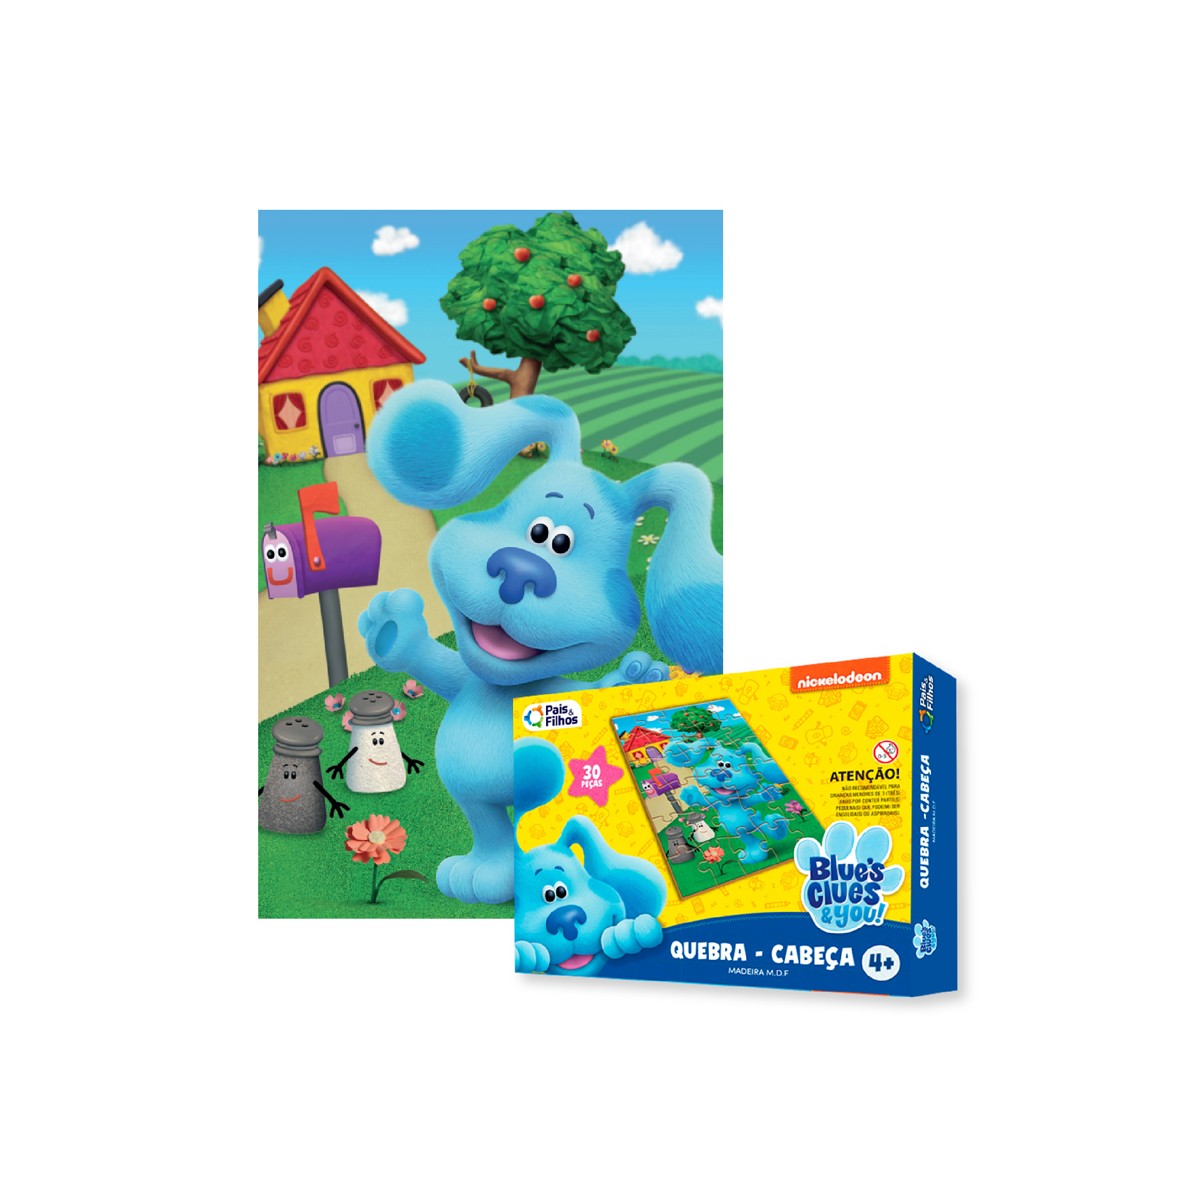 Quebra cabeça infantil pistas de blue com 30 peças em madeira-790690-23302